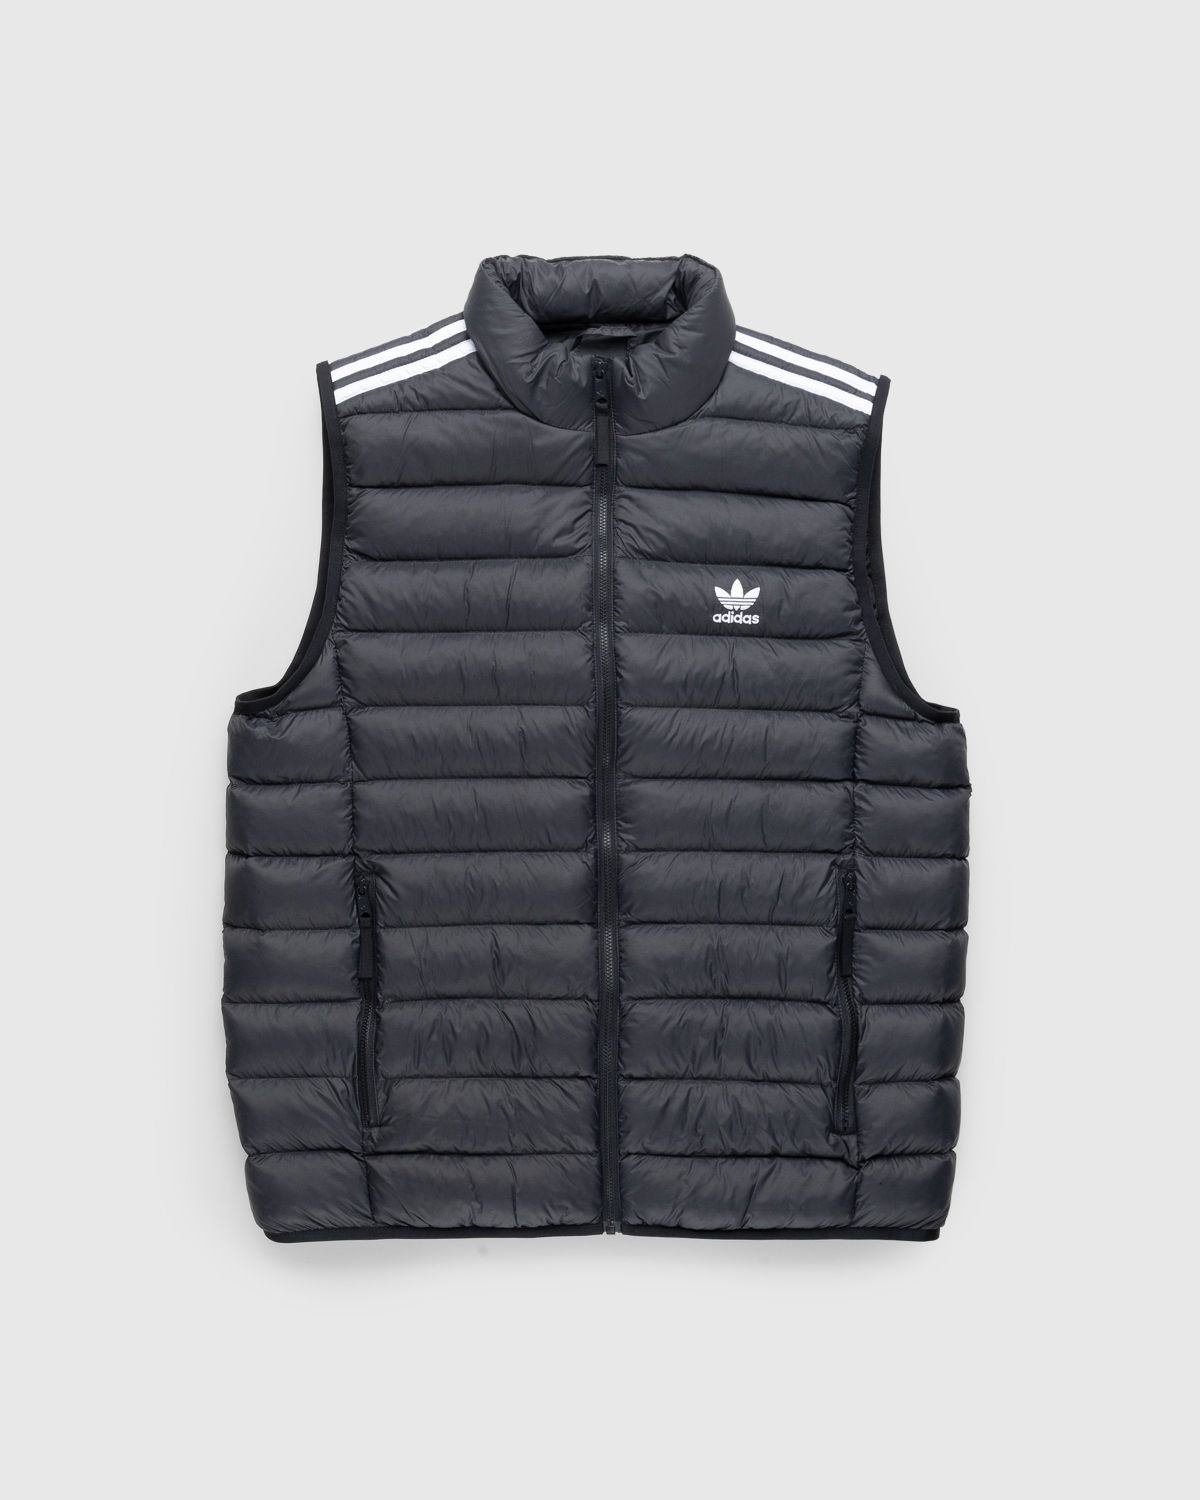 Adidas – Vest | Shop Black/White Padded Highsnobiety